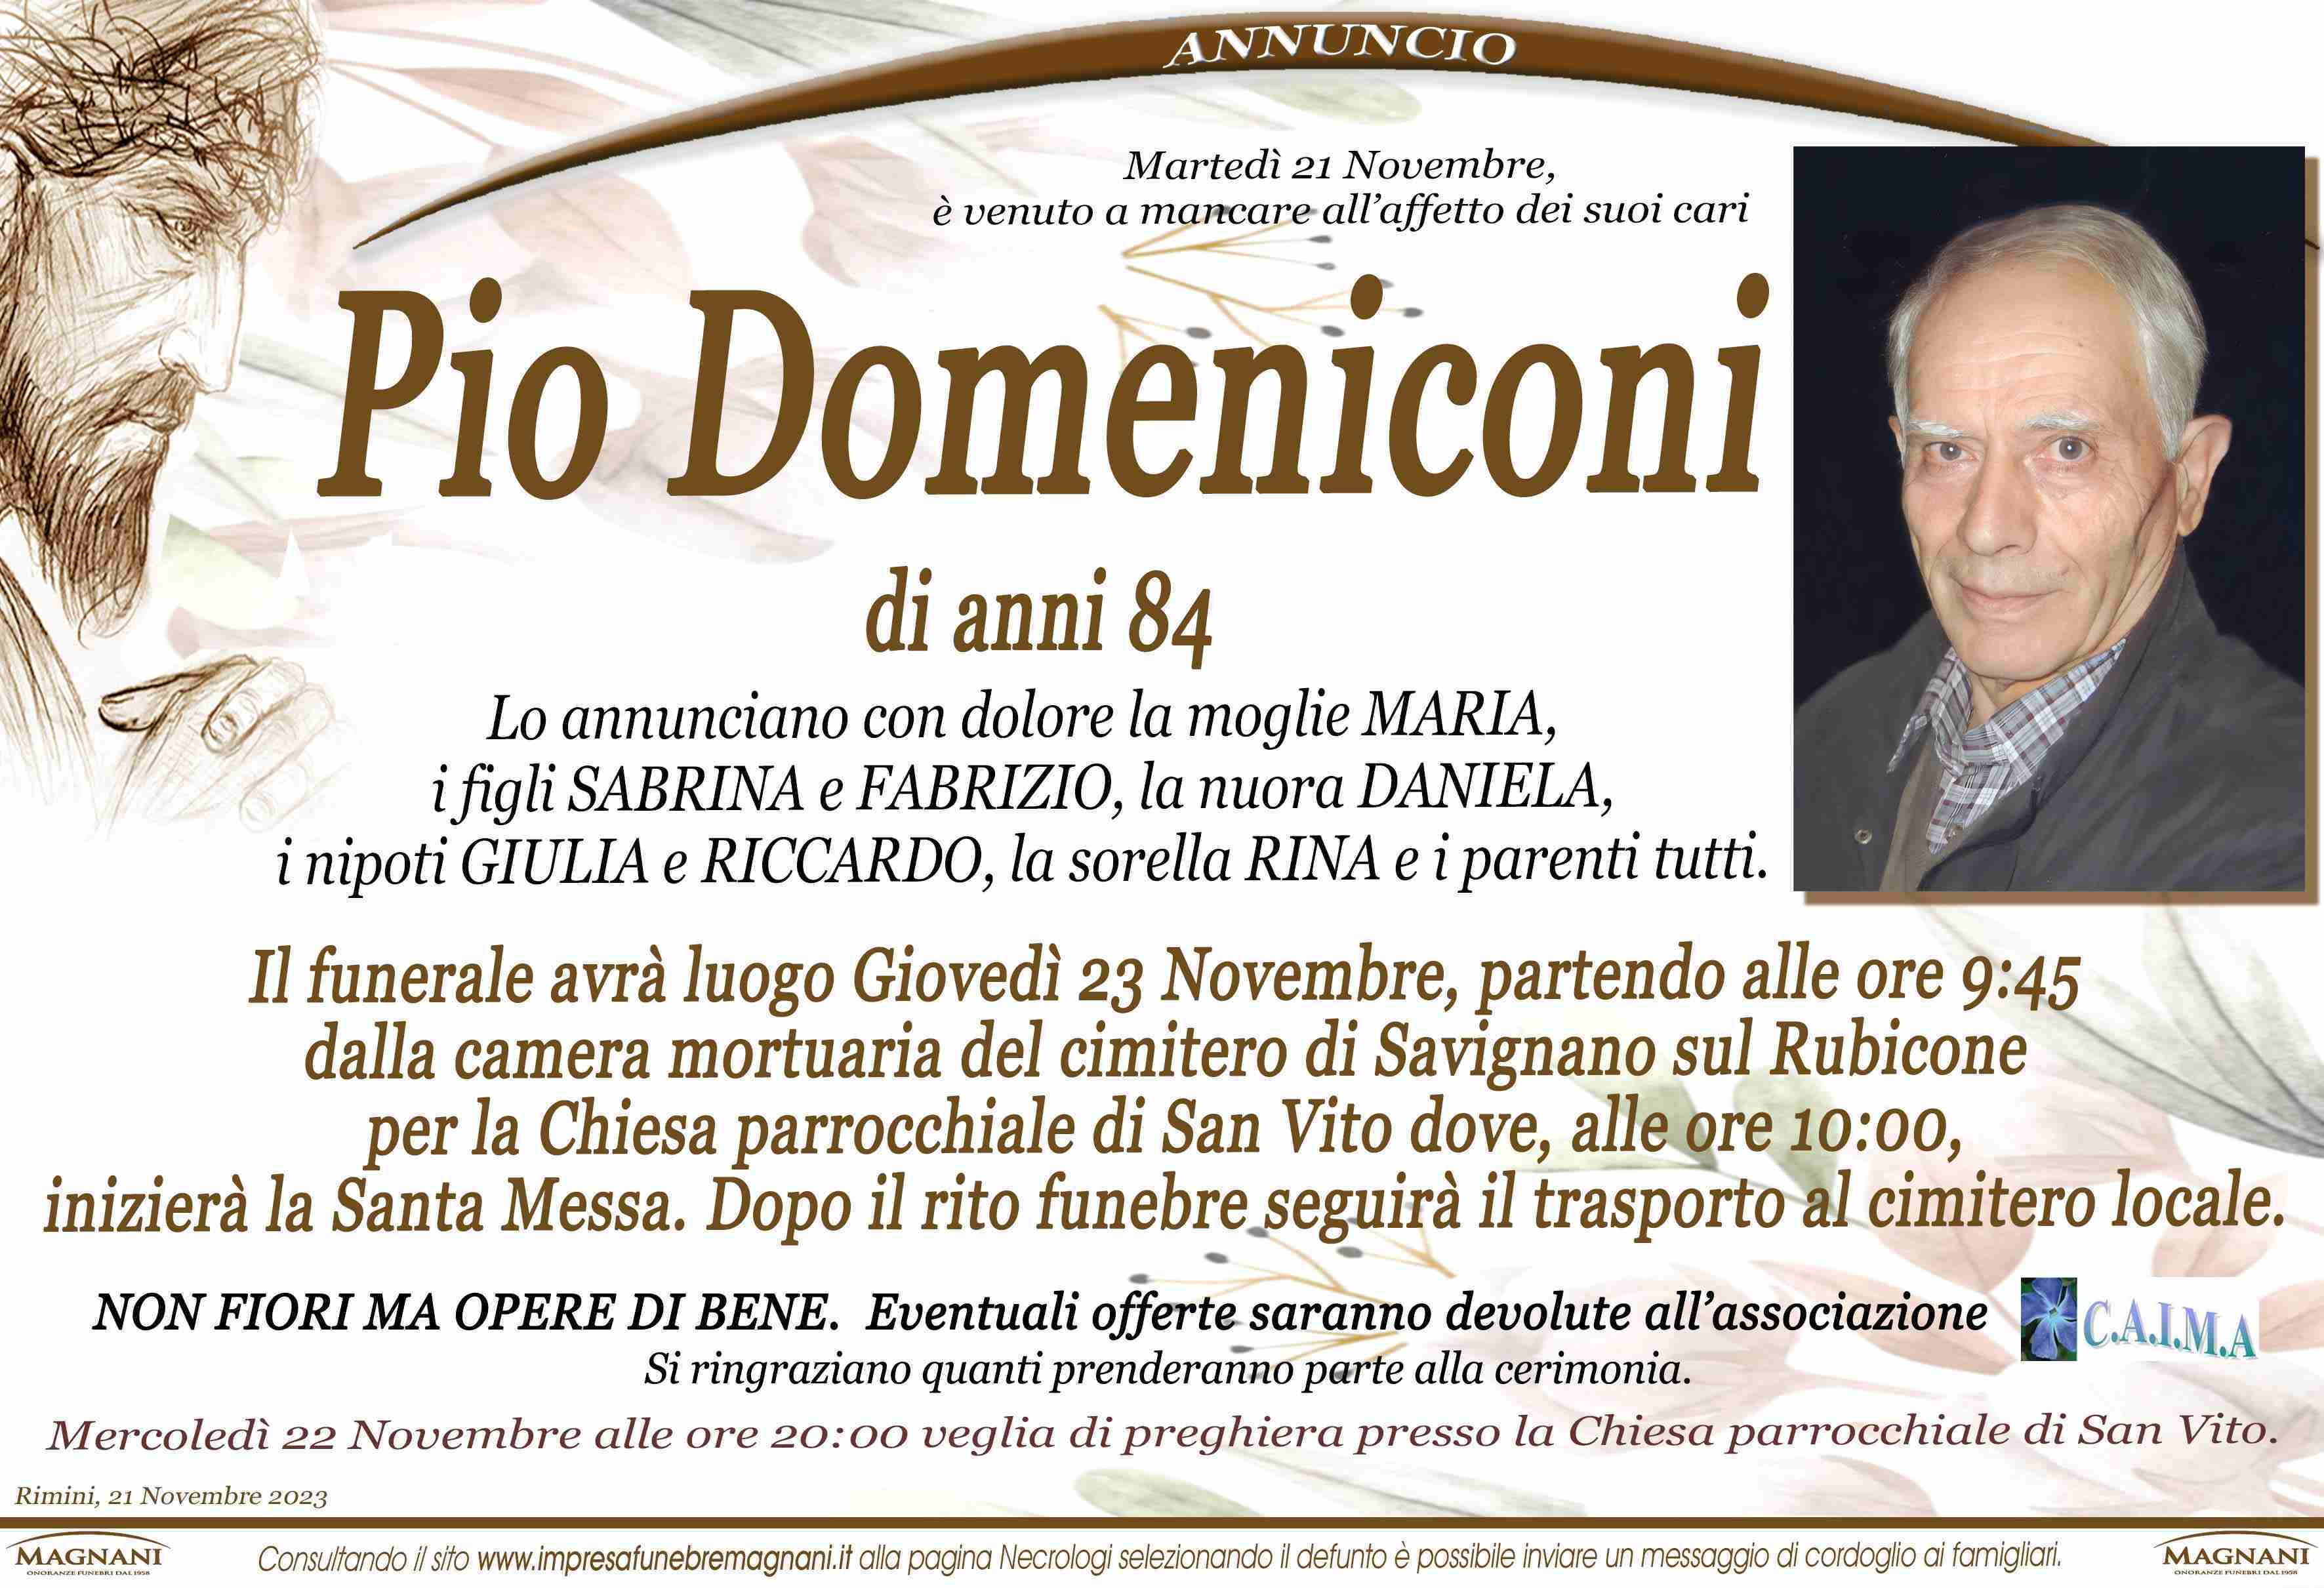 Pio Domeniconi